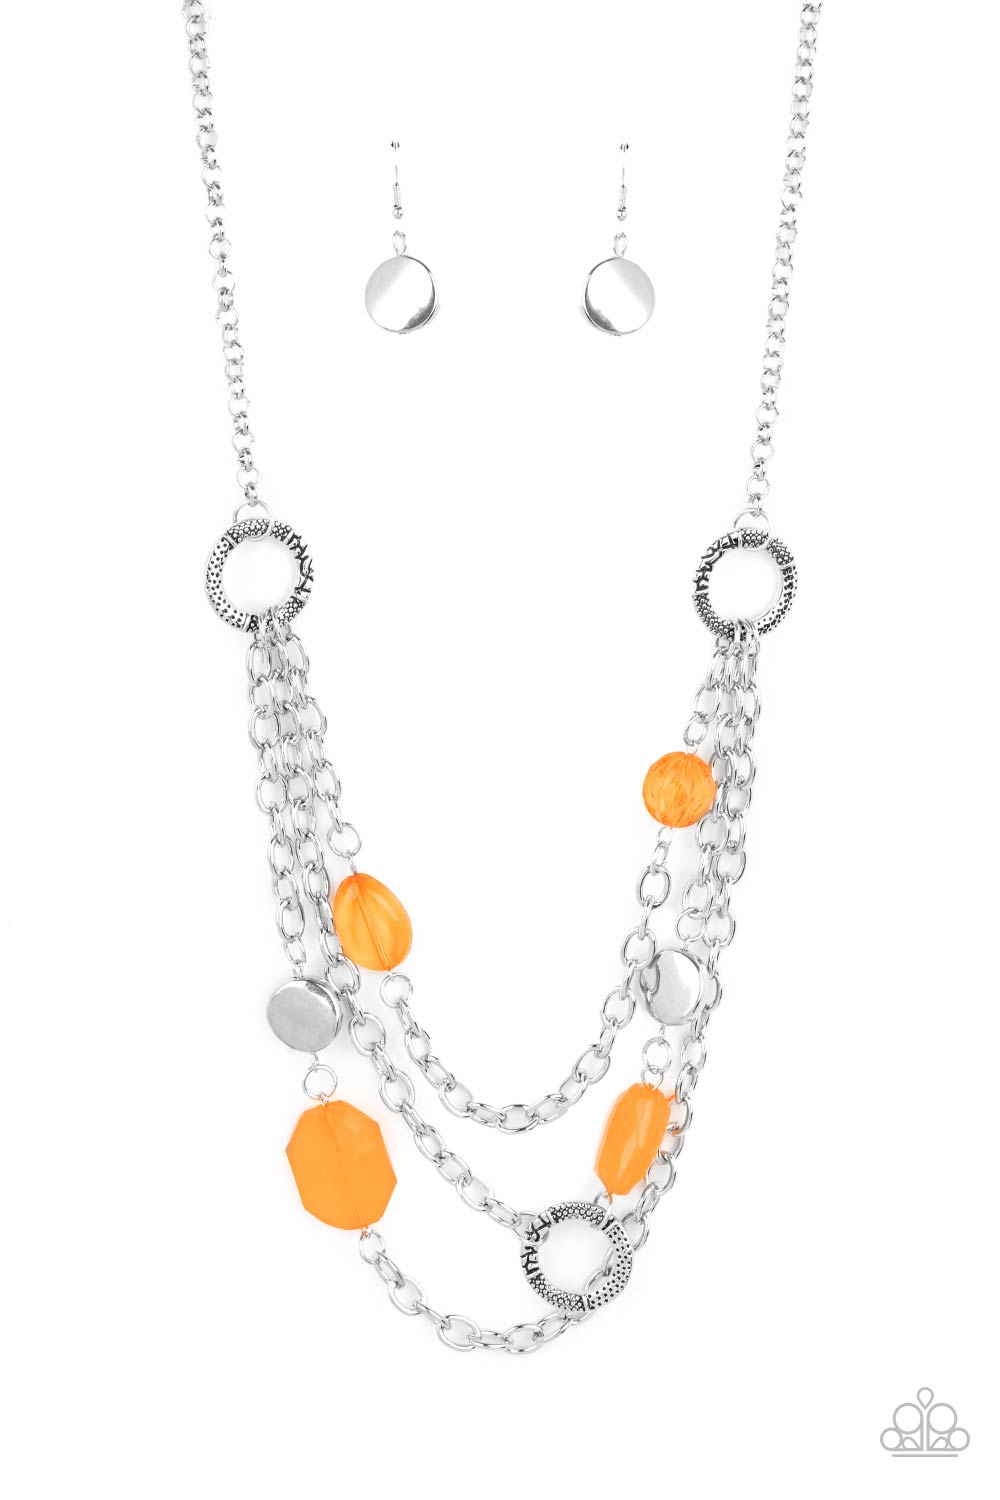 Oceanside Spa - Orange Necklace Set - Princess Glam Shop